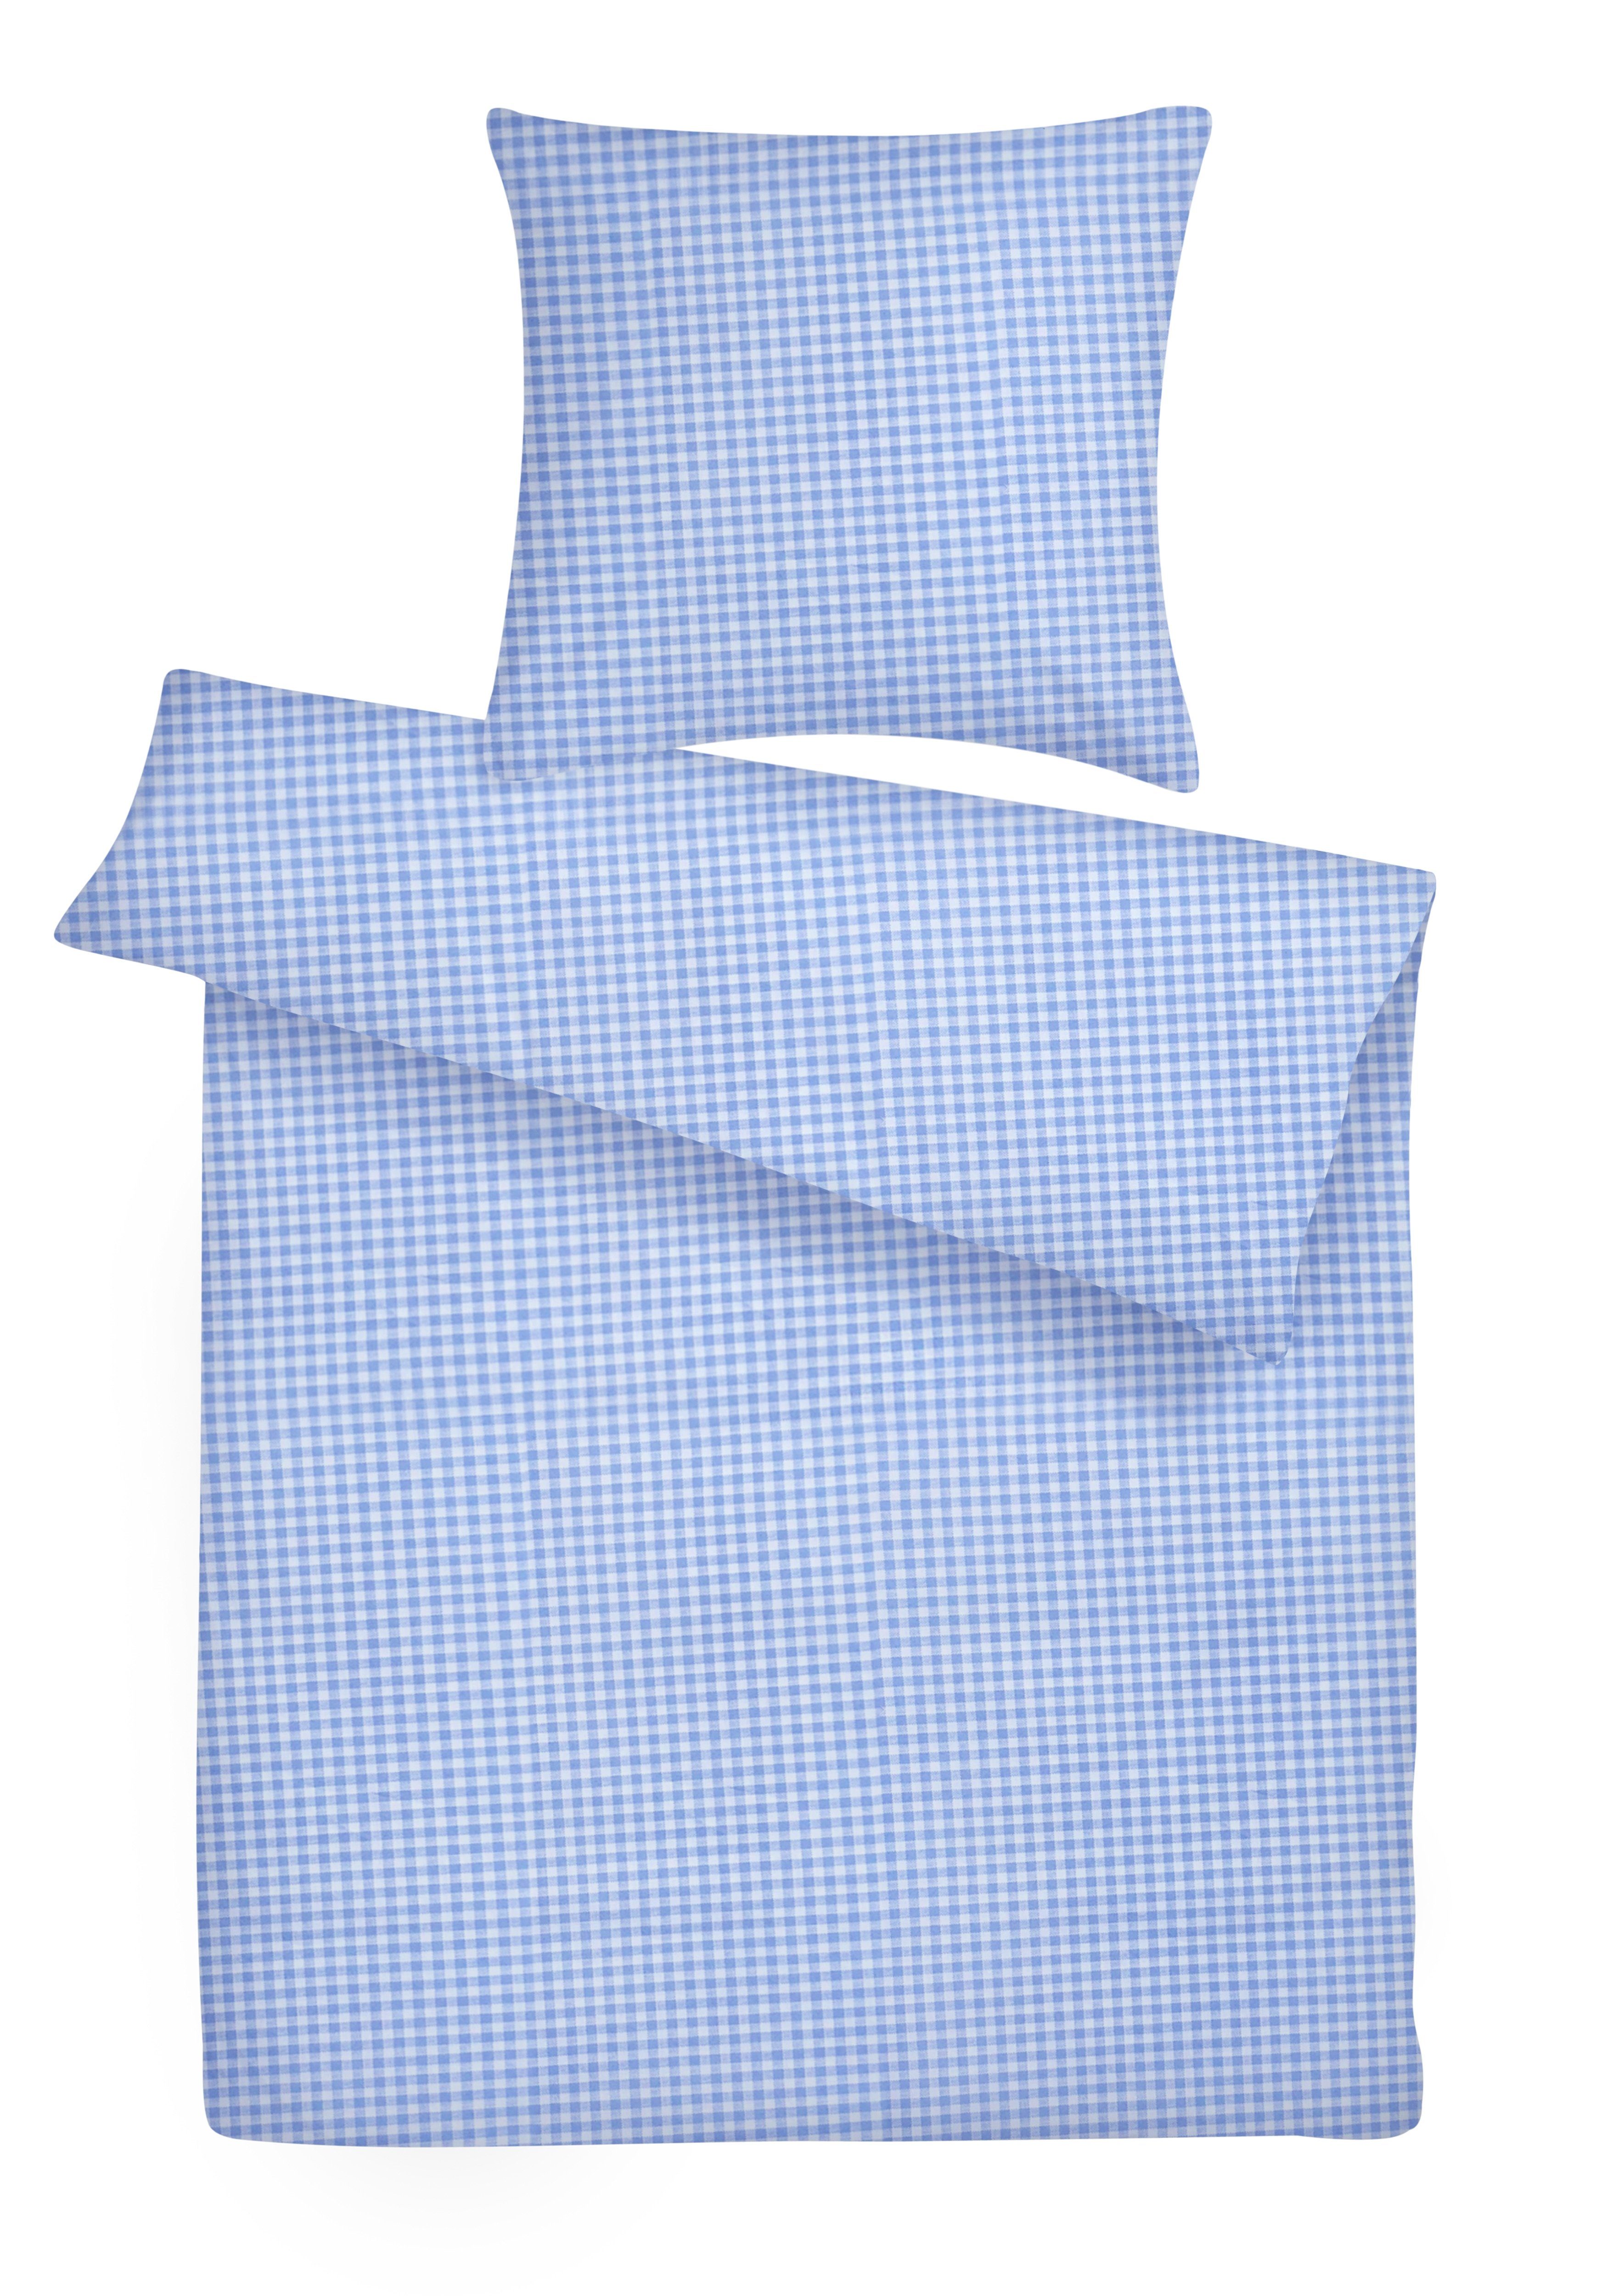 Babybettwäsche 100% Baumwolle Kissen u Deckenbezug Füllung Design-Nr 210 5 tlg 